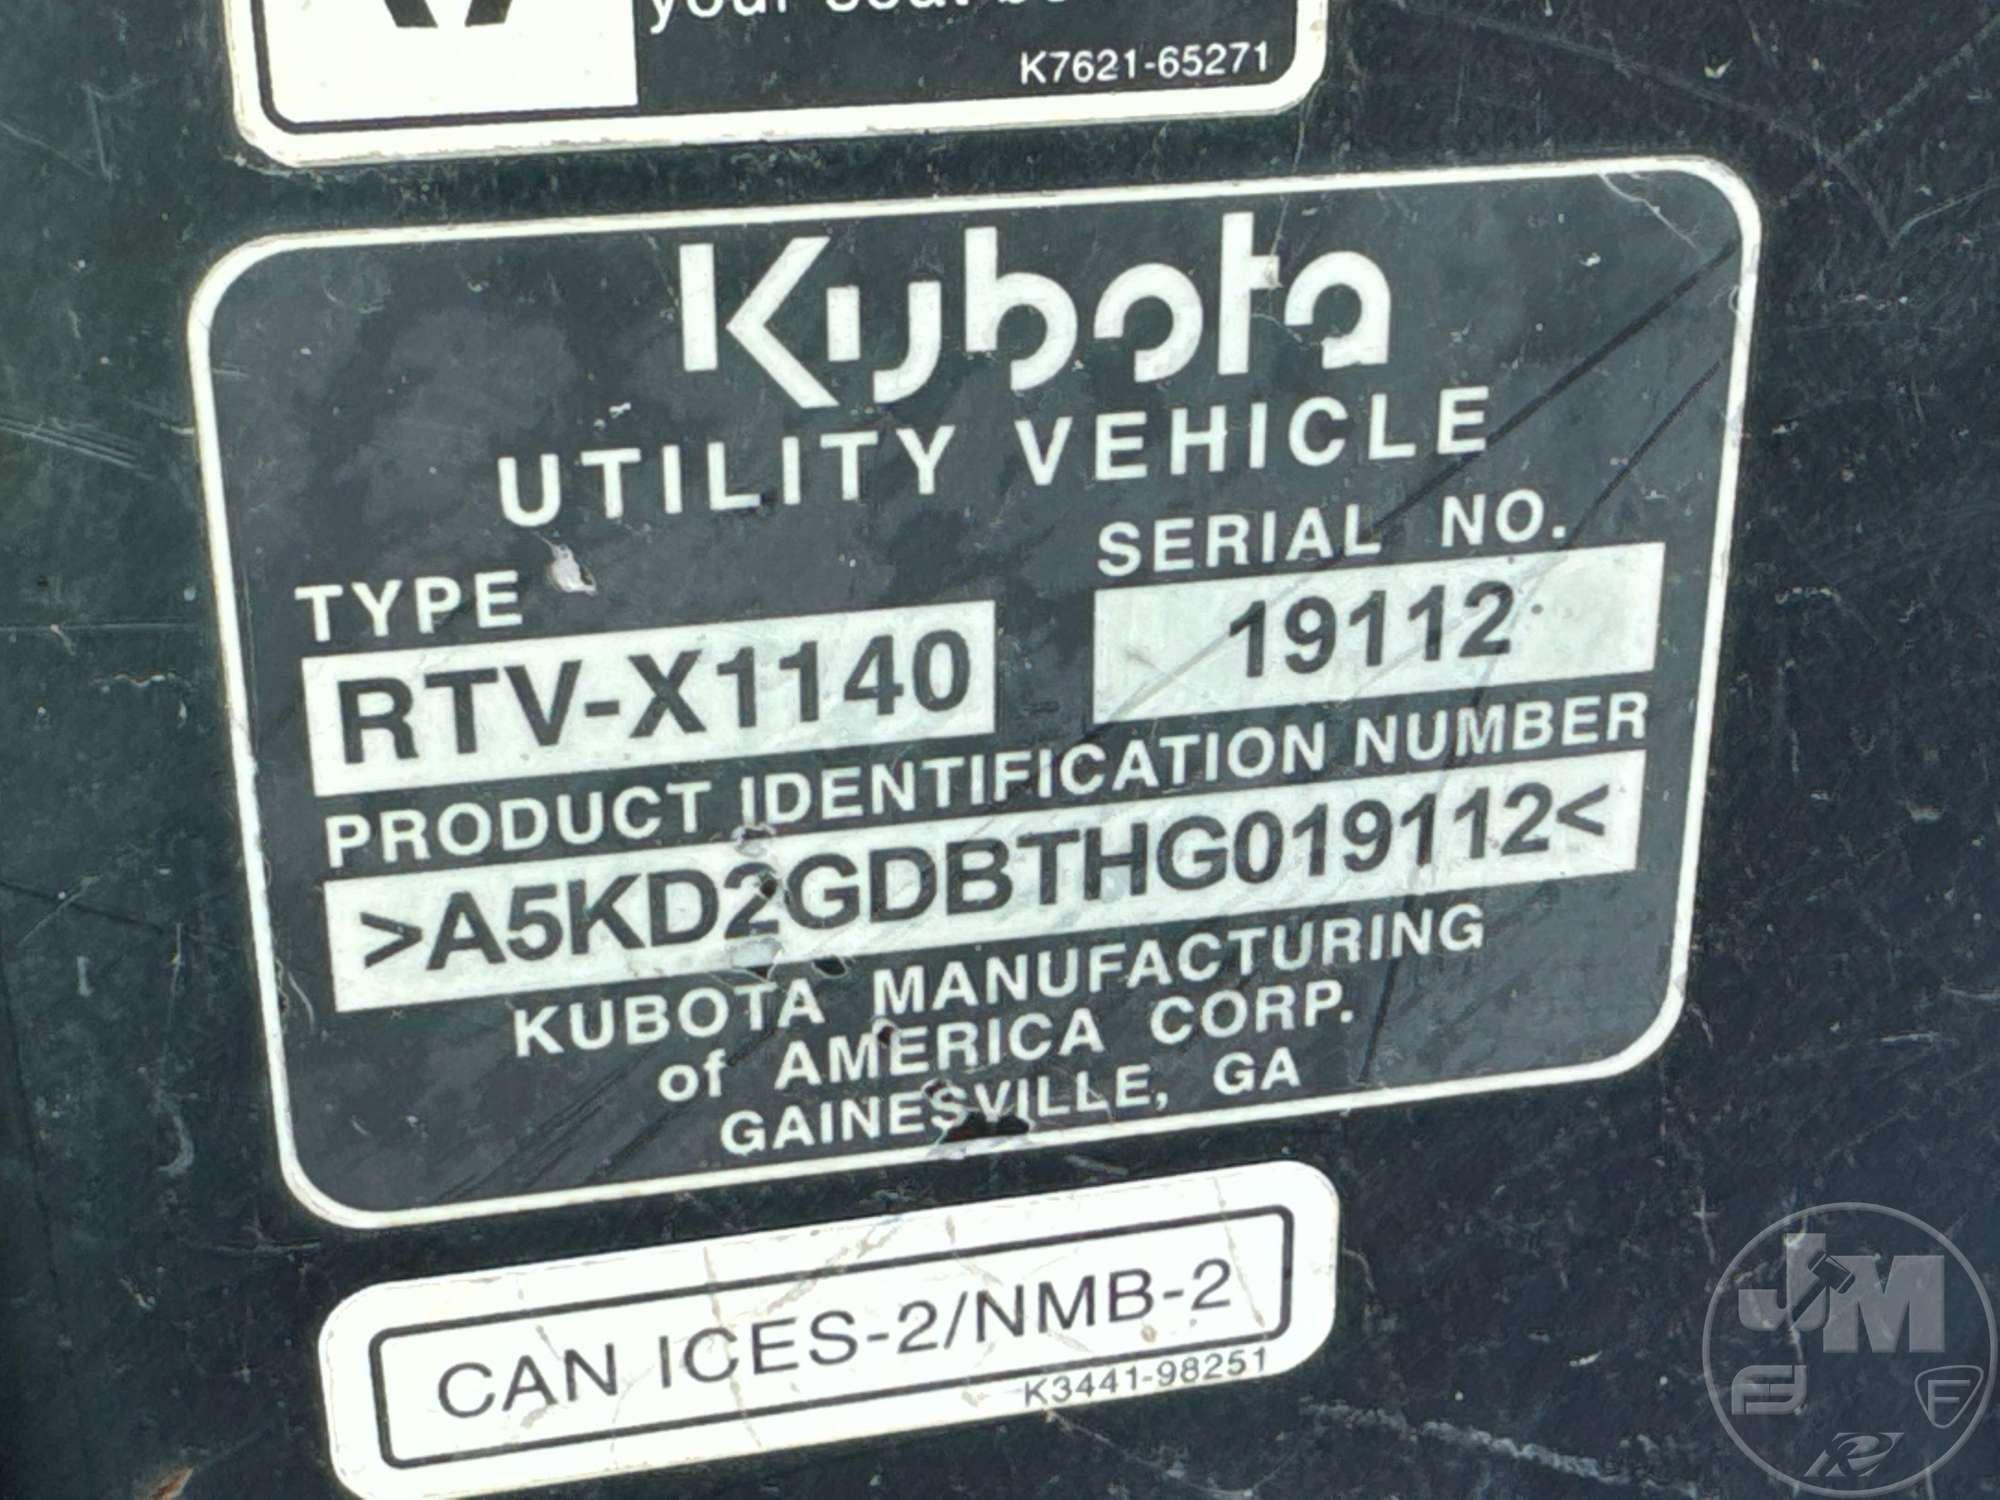 2017 KUBOTA RTV-X1140 SN: A5KD2GDBTHG019112